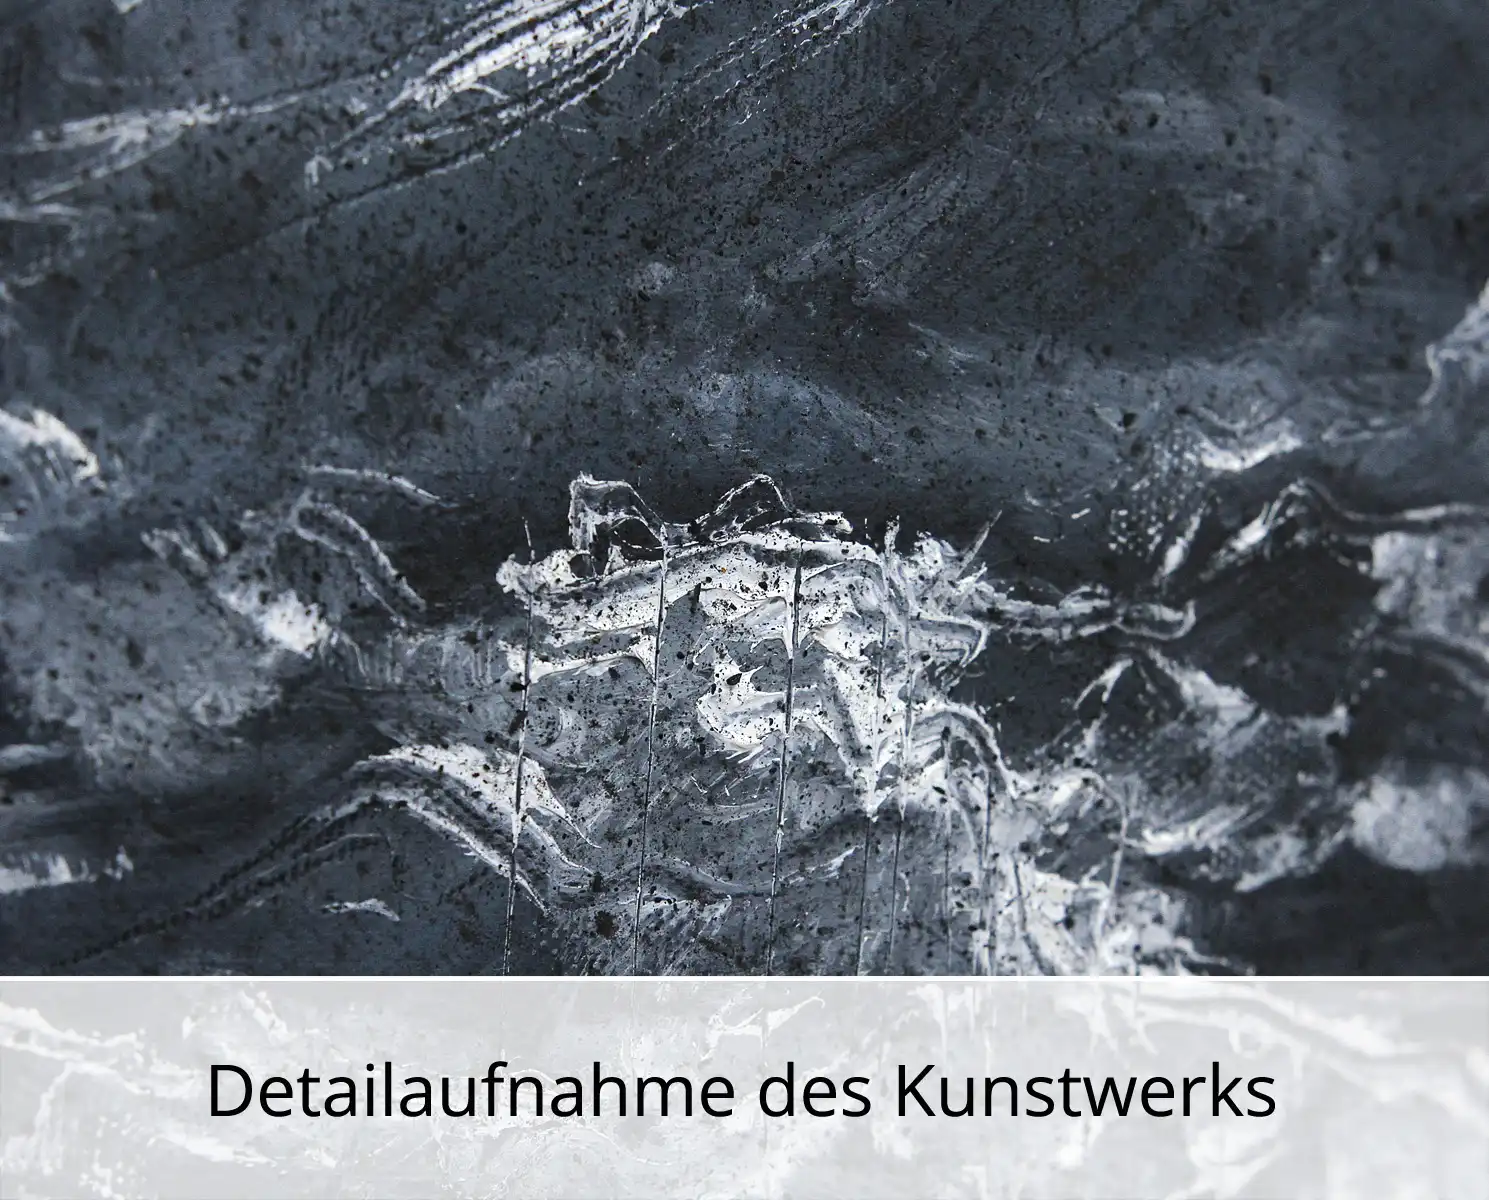 C. Blechschmidt: "Wellen am Nachmittag", Original/Unikat, zeitgenössisches Ölgemälde